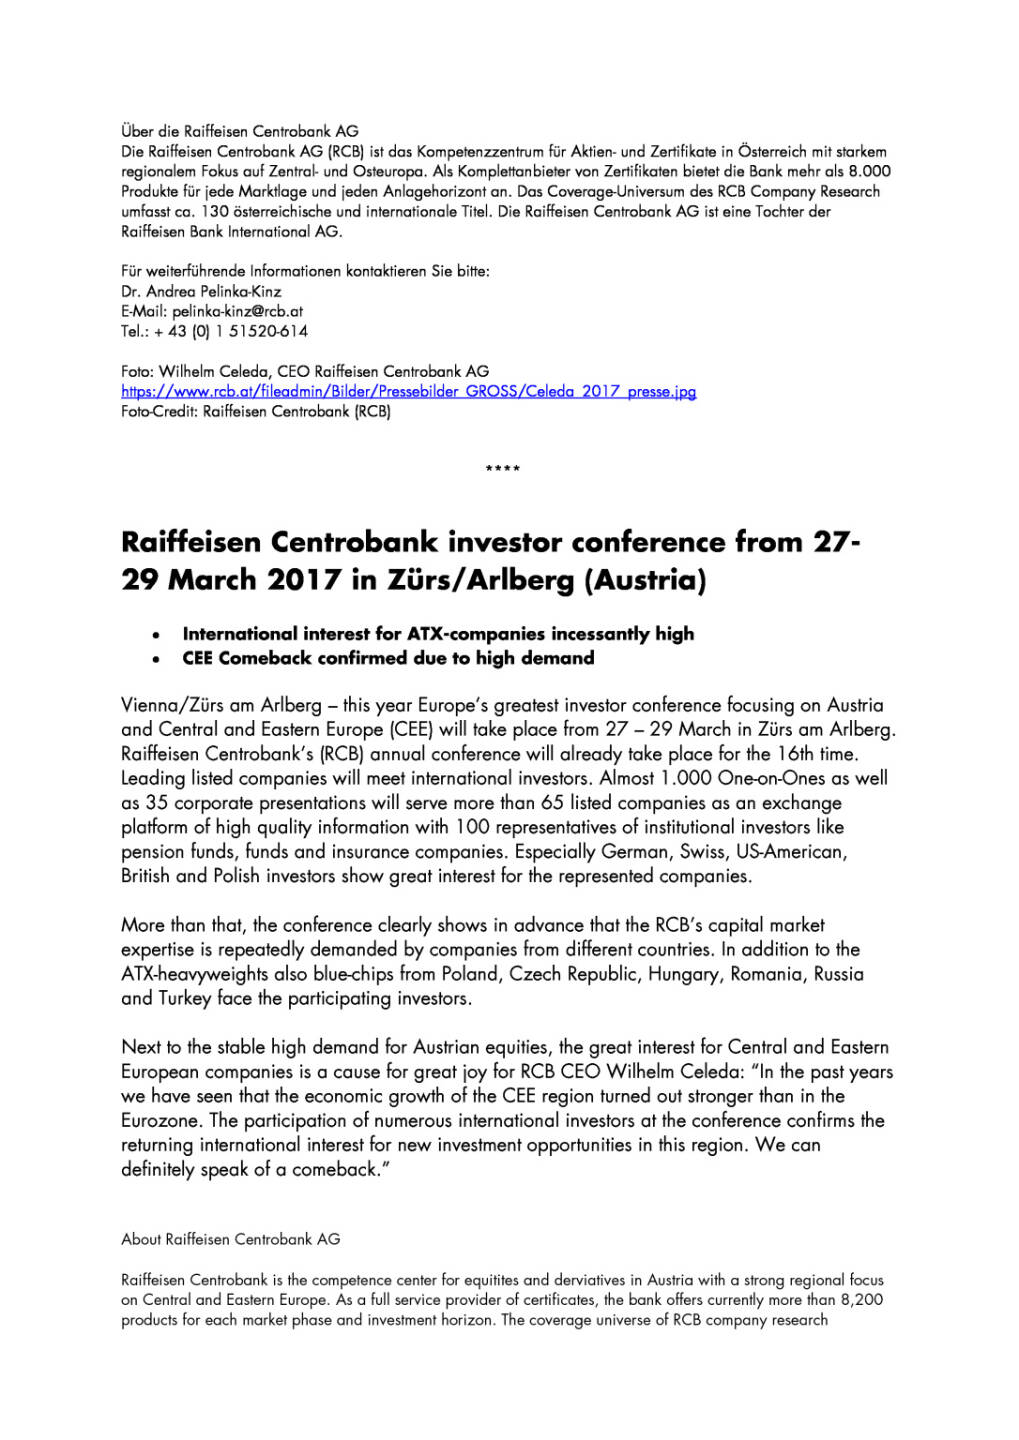 Raiffeisen Centrobank Investorenkonferenz vom 27.-29. März 2017 in Zürs am Arlberg, Seite 2/3, komplettes Dokument unter http://boerse-social.com/static/uploads/file_2168_raiffeisen_centrobank_investorenkonferenz_vom_27-29_marz_2017_in_zurs_am_arlberg.pdf